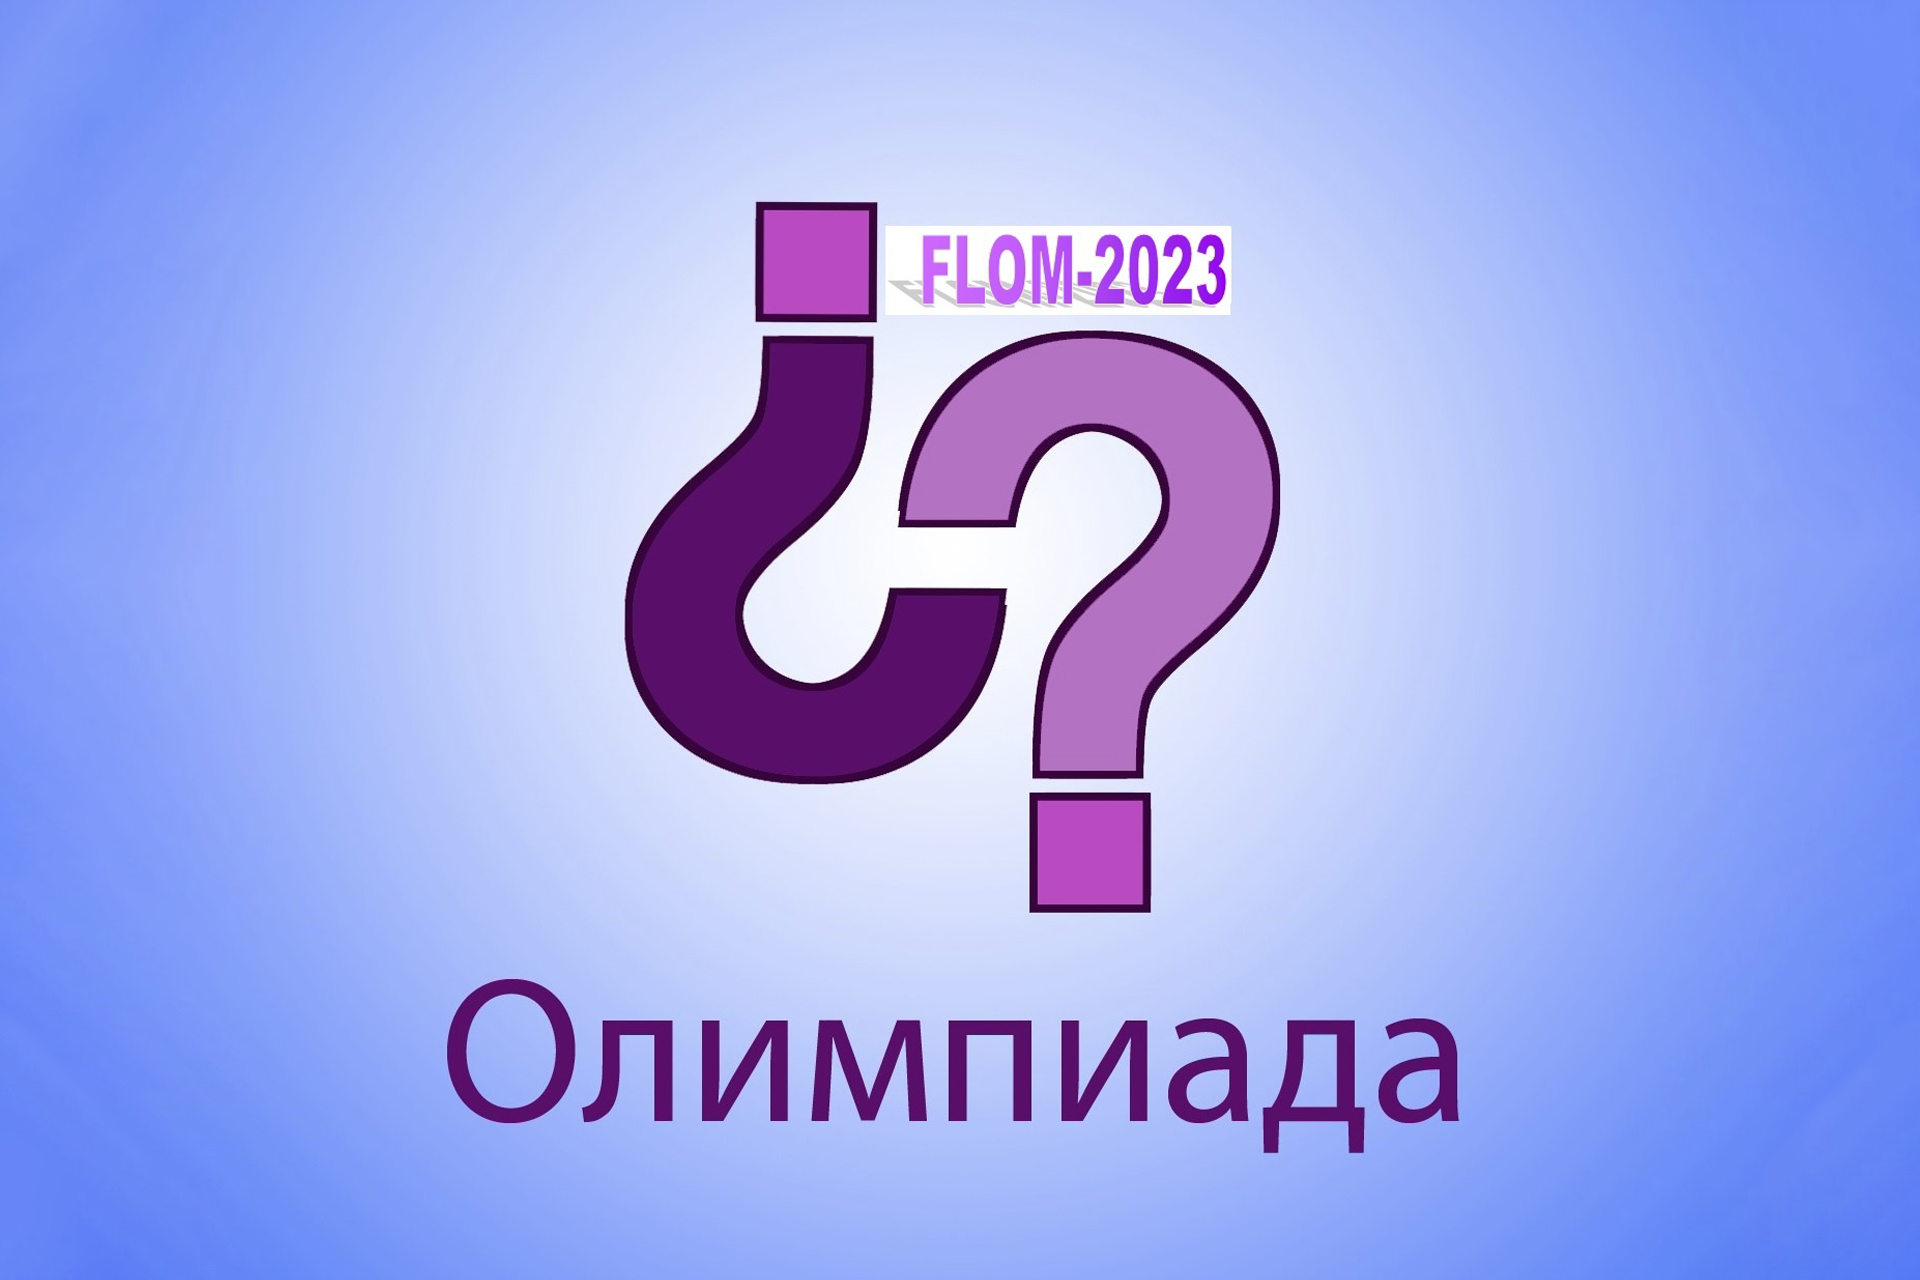 Прими участие в VII Всероссийской олимпиаде по иностранным языкам FLOM-2023